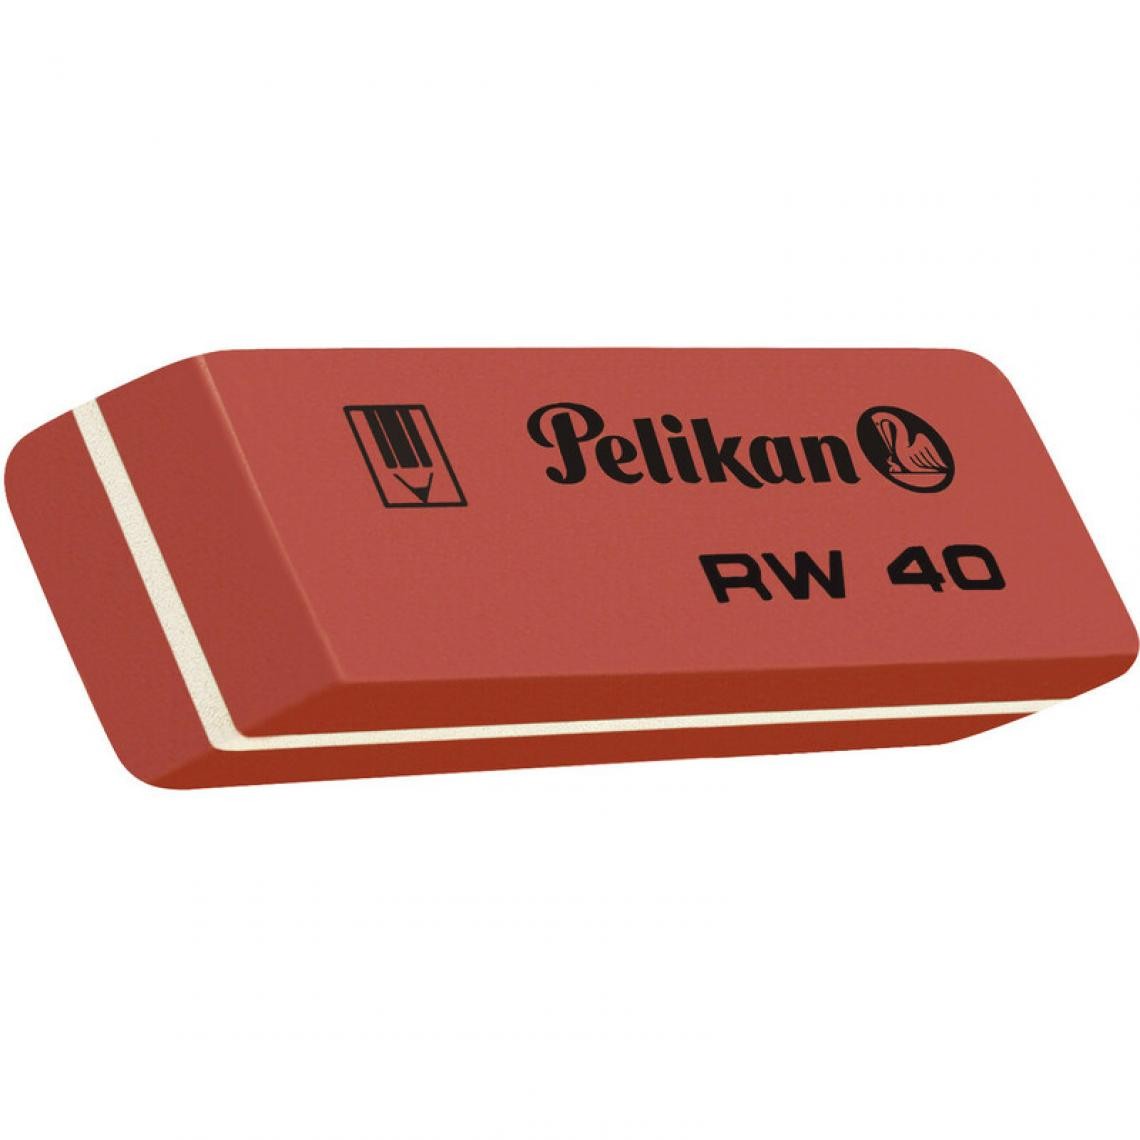 Pelikan - Pelikan Gomme caoutchouc RW 40, (L)58 x (P)20 x (H)8 mm () - Outils et accessoires du peintre